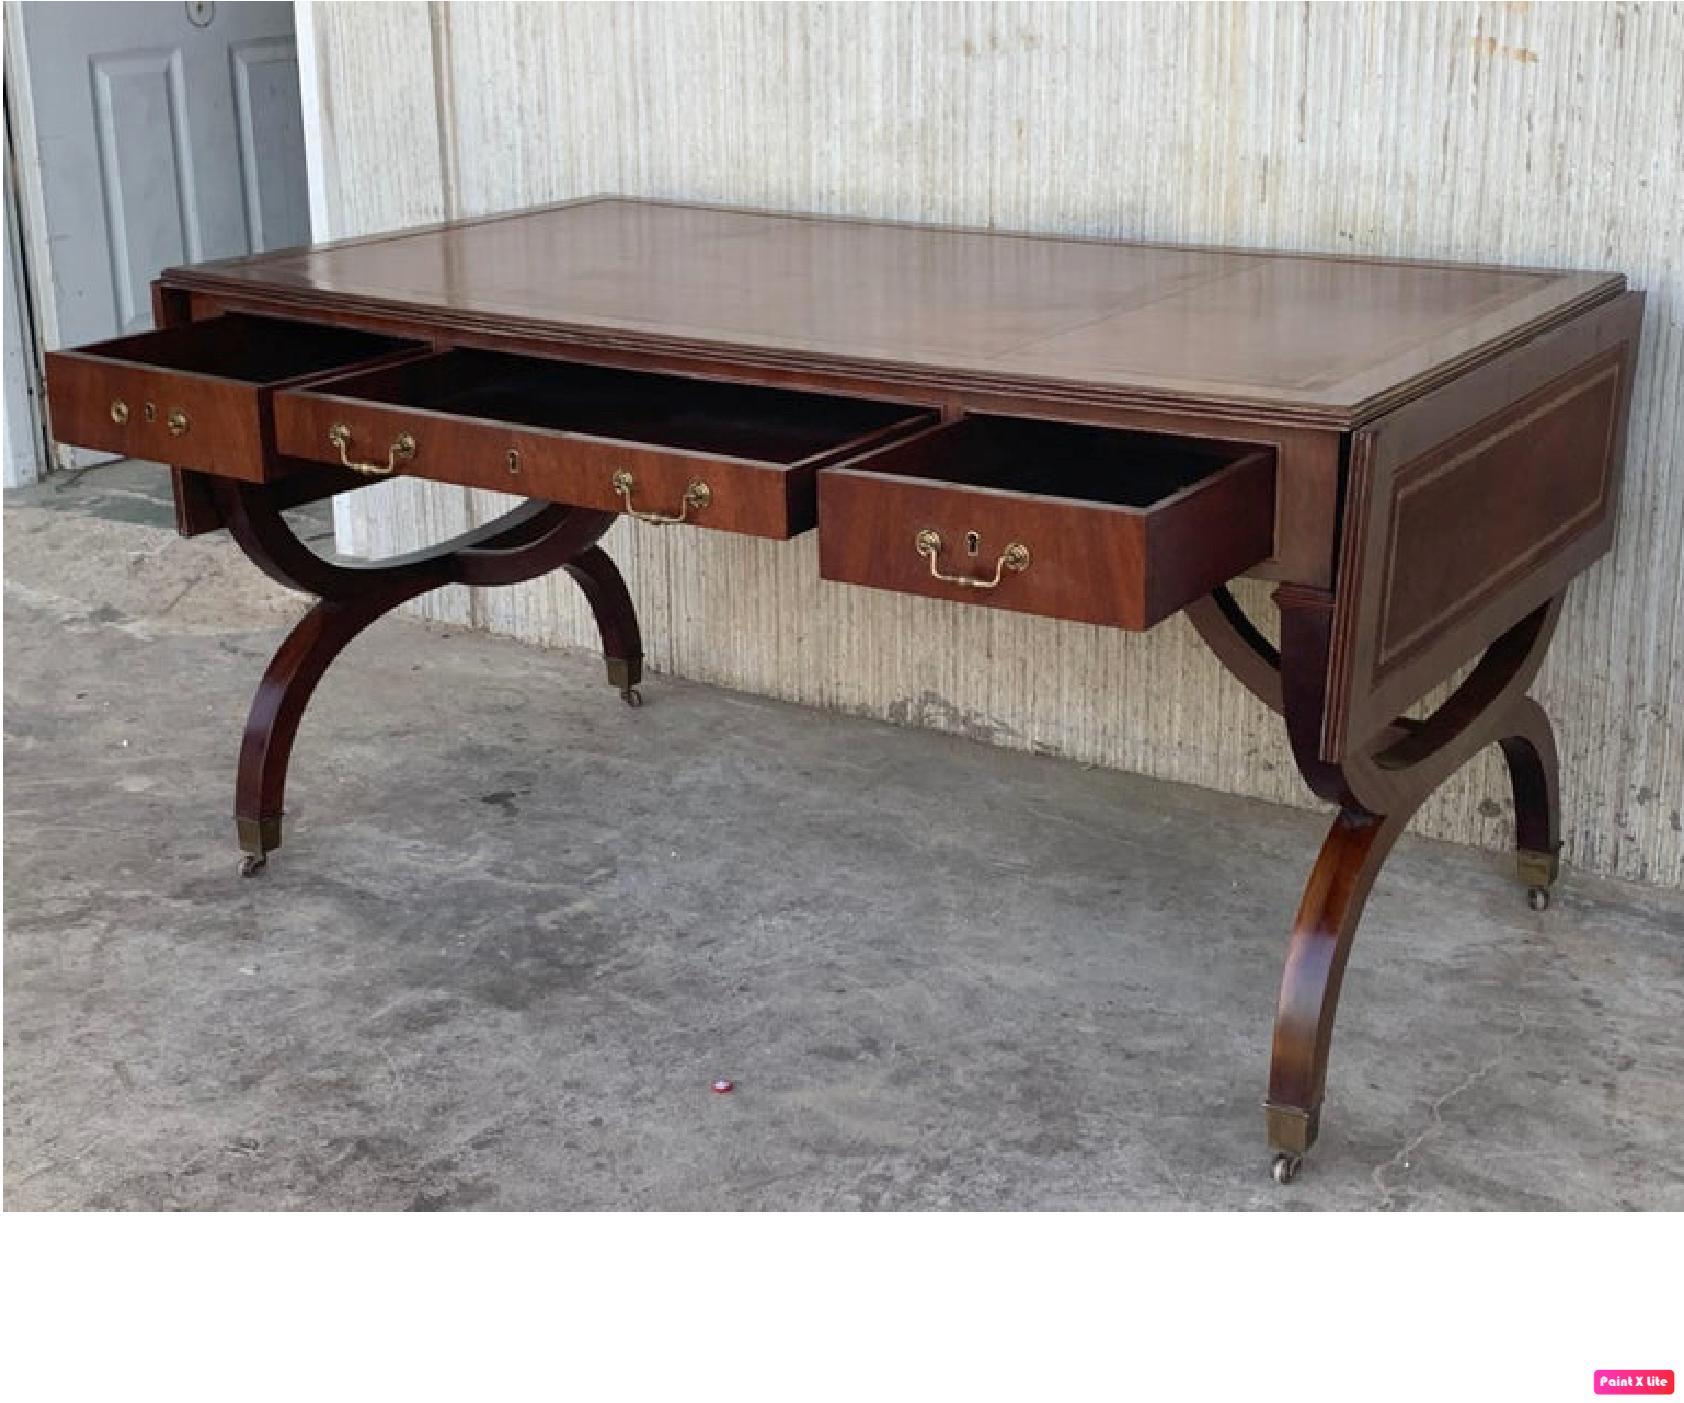 Laiton Superbe table à écrire ou bureau de bibliothèque de style victorien Plateau en cuir Brown Pieds Gillows